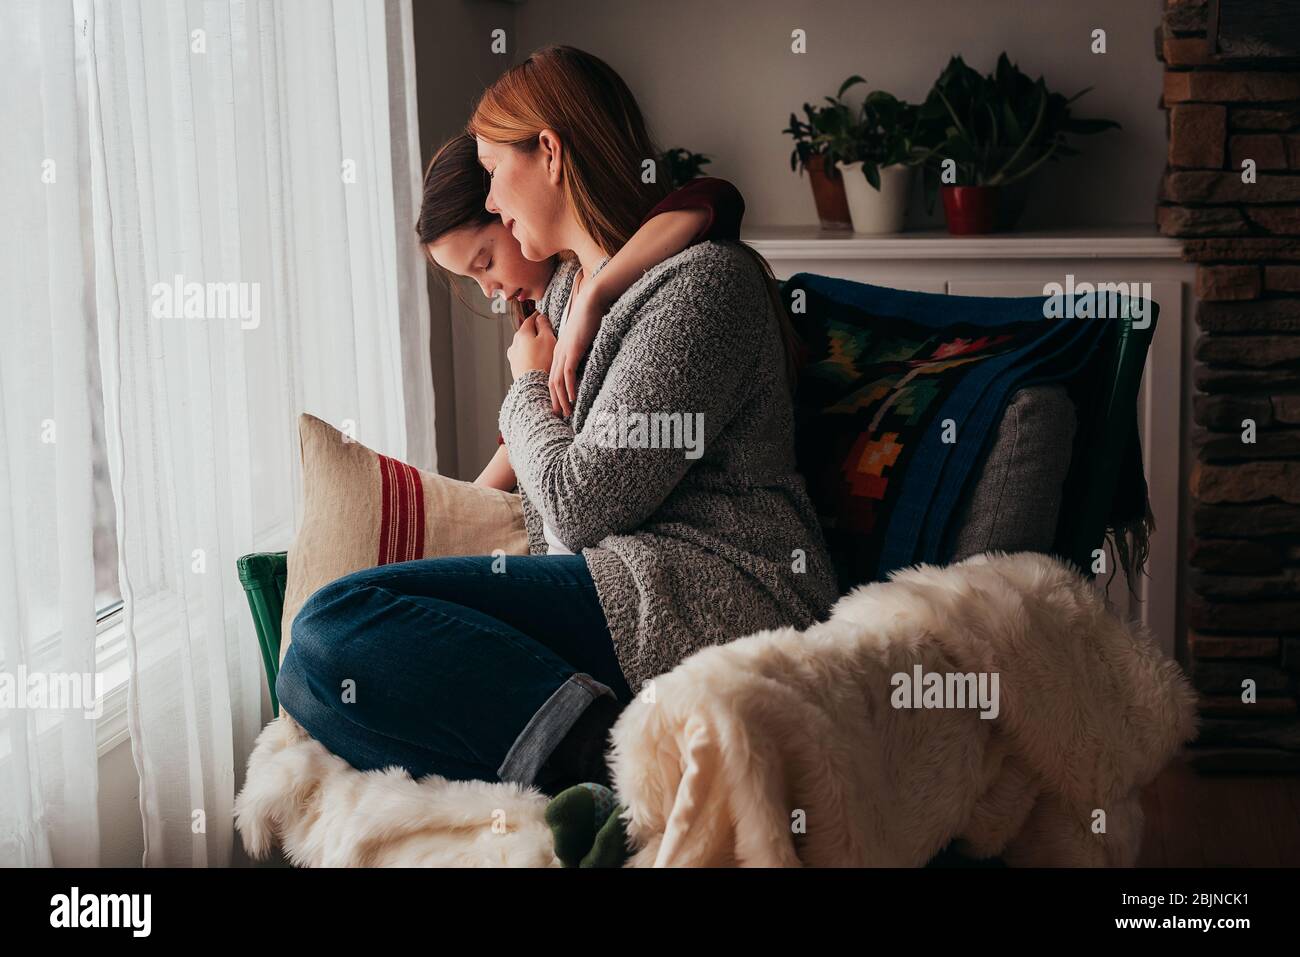 Fille embrassant sa mère assise dans un fauteuil Banque D'Images